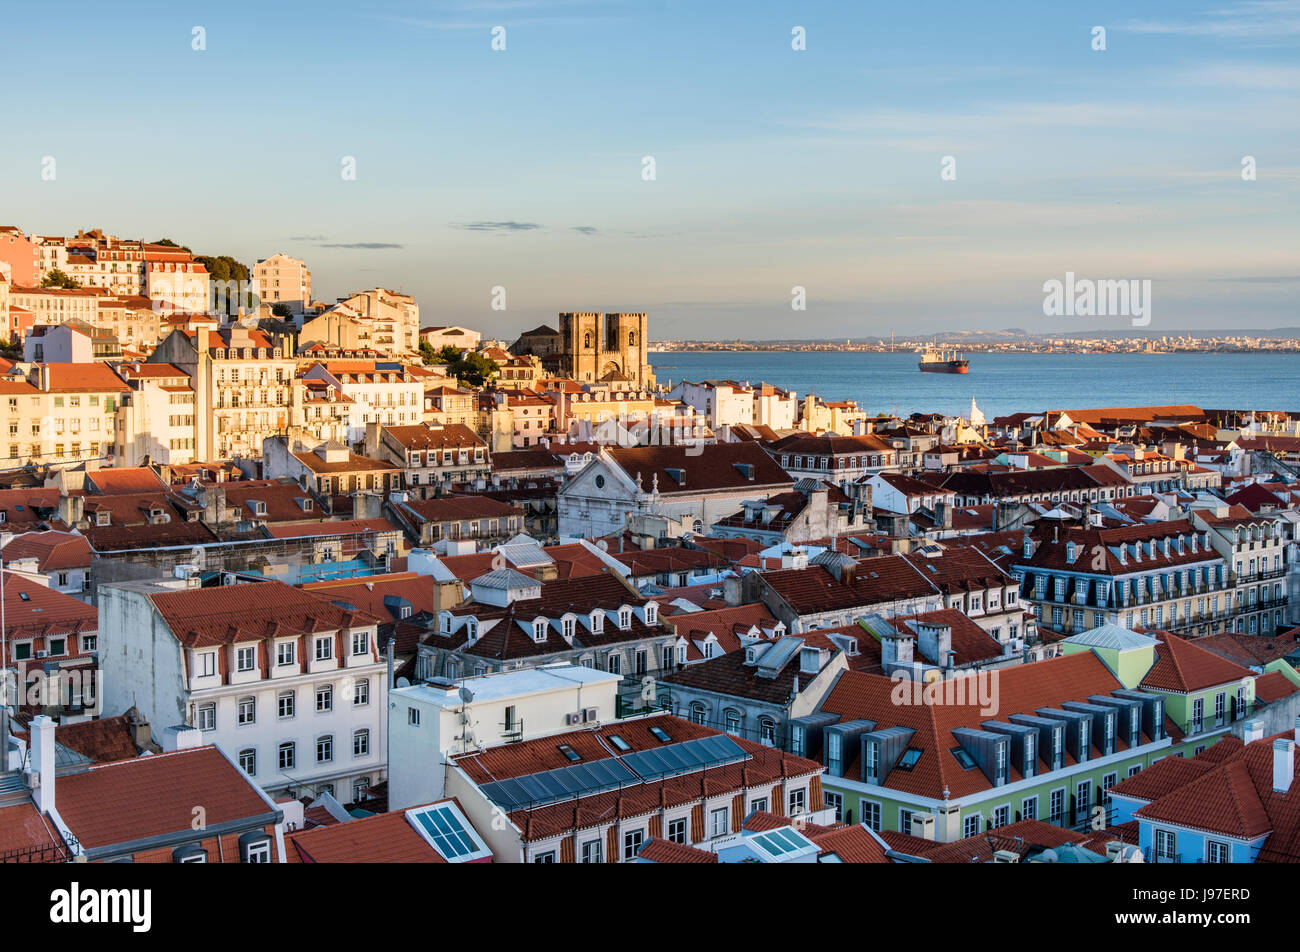 Tetti di Baixa, il centro storico di Lisbona, con il fiume Tago e il Motherchurch sullo sfondo, al crepuscolo. Lisbona, Portogallo Foto Stock